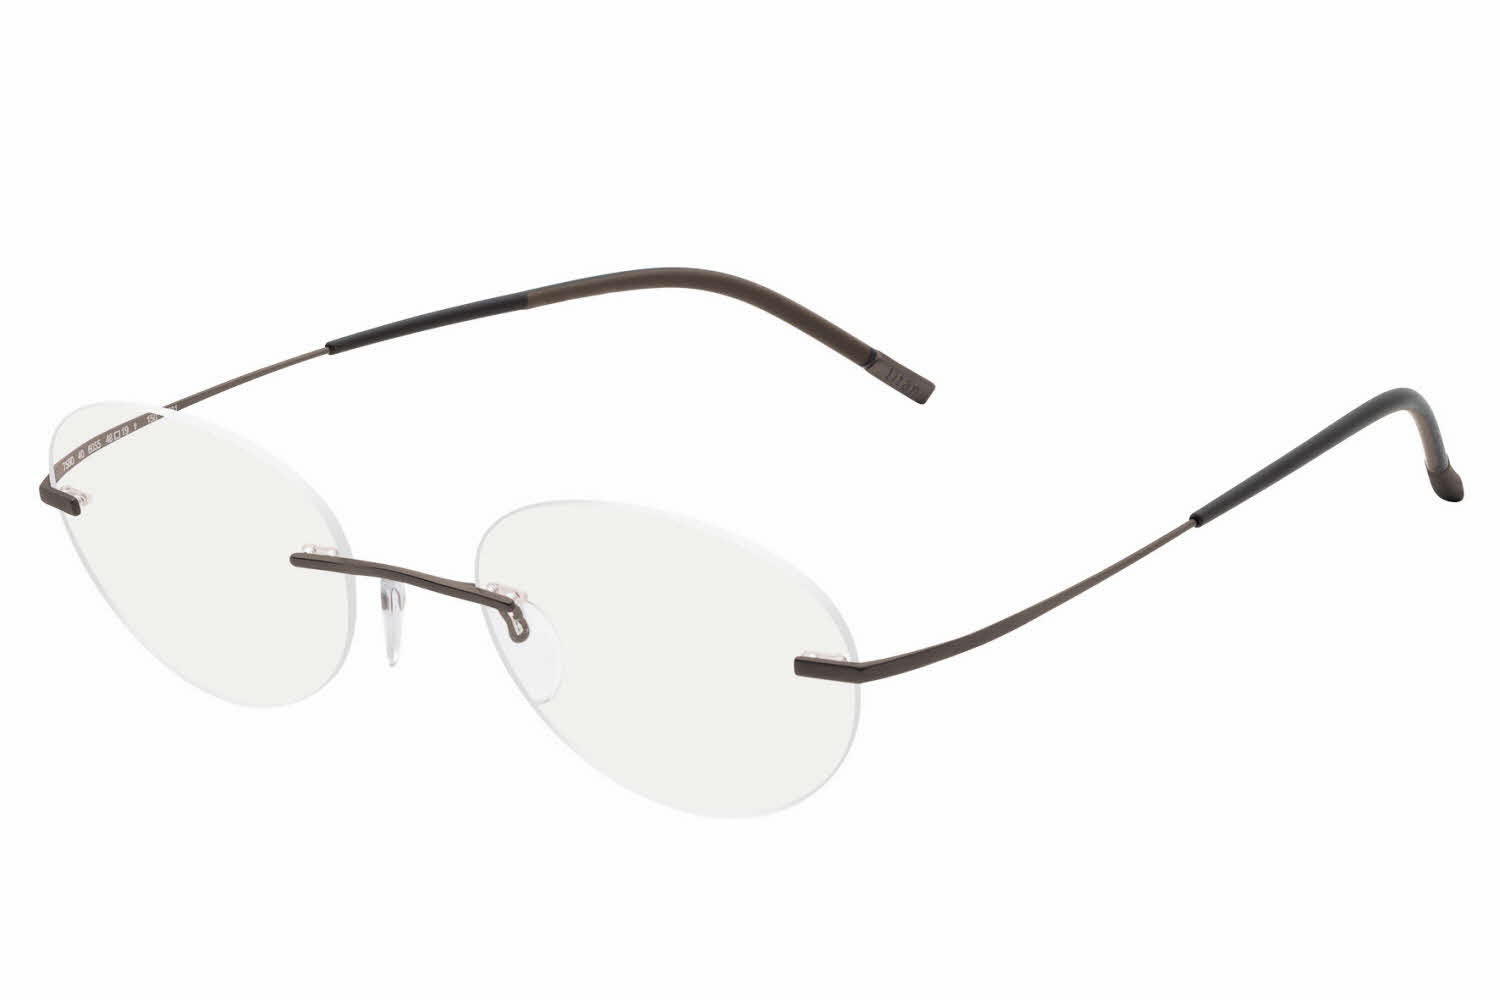 Silhouette Rimless 7581 Titan Minimal Art The Icon Eyeglasses in Brown